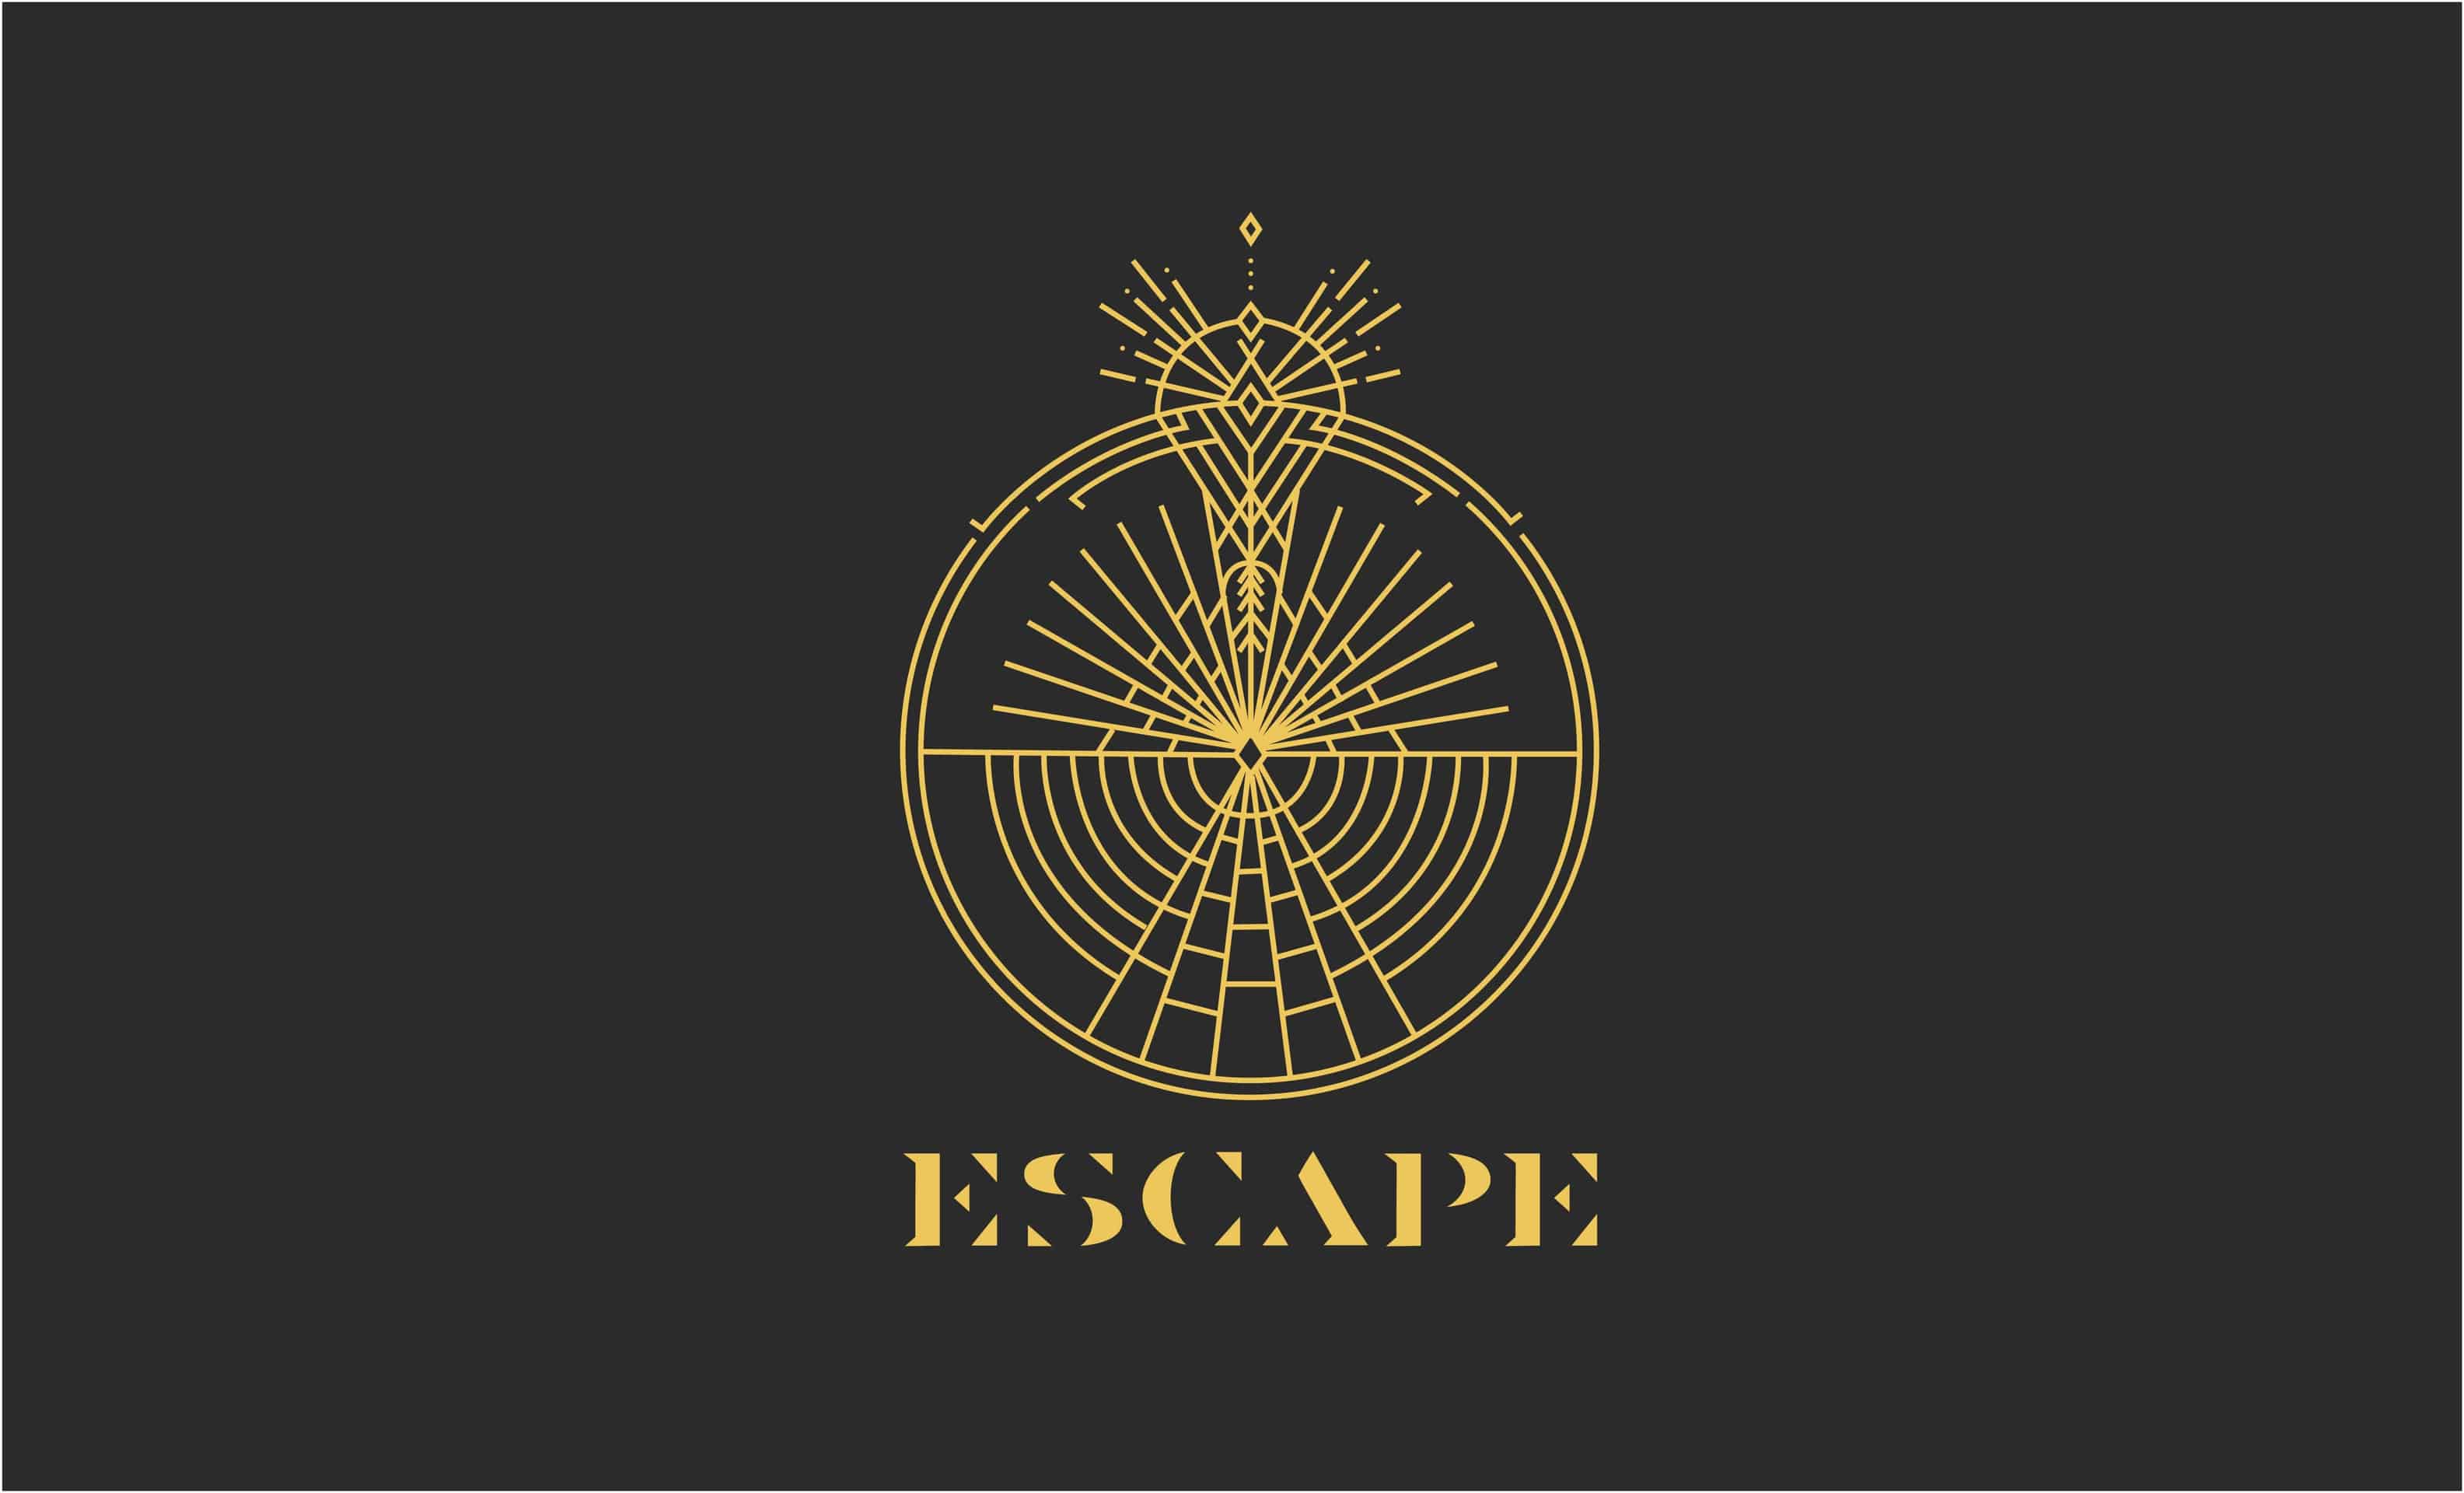 Escape Festival Brand